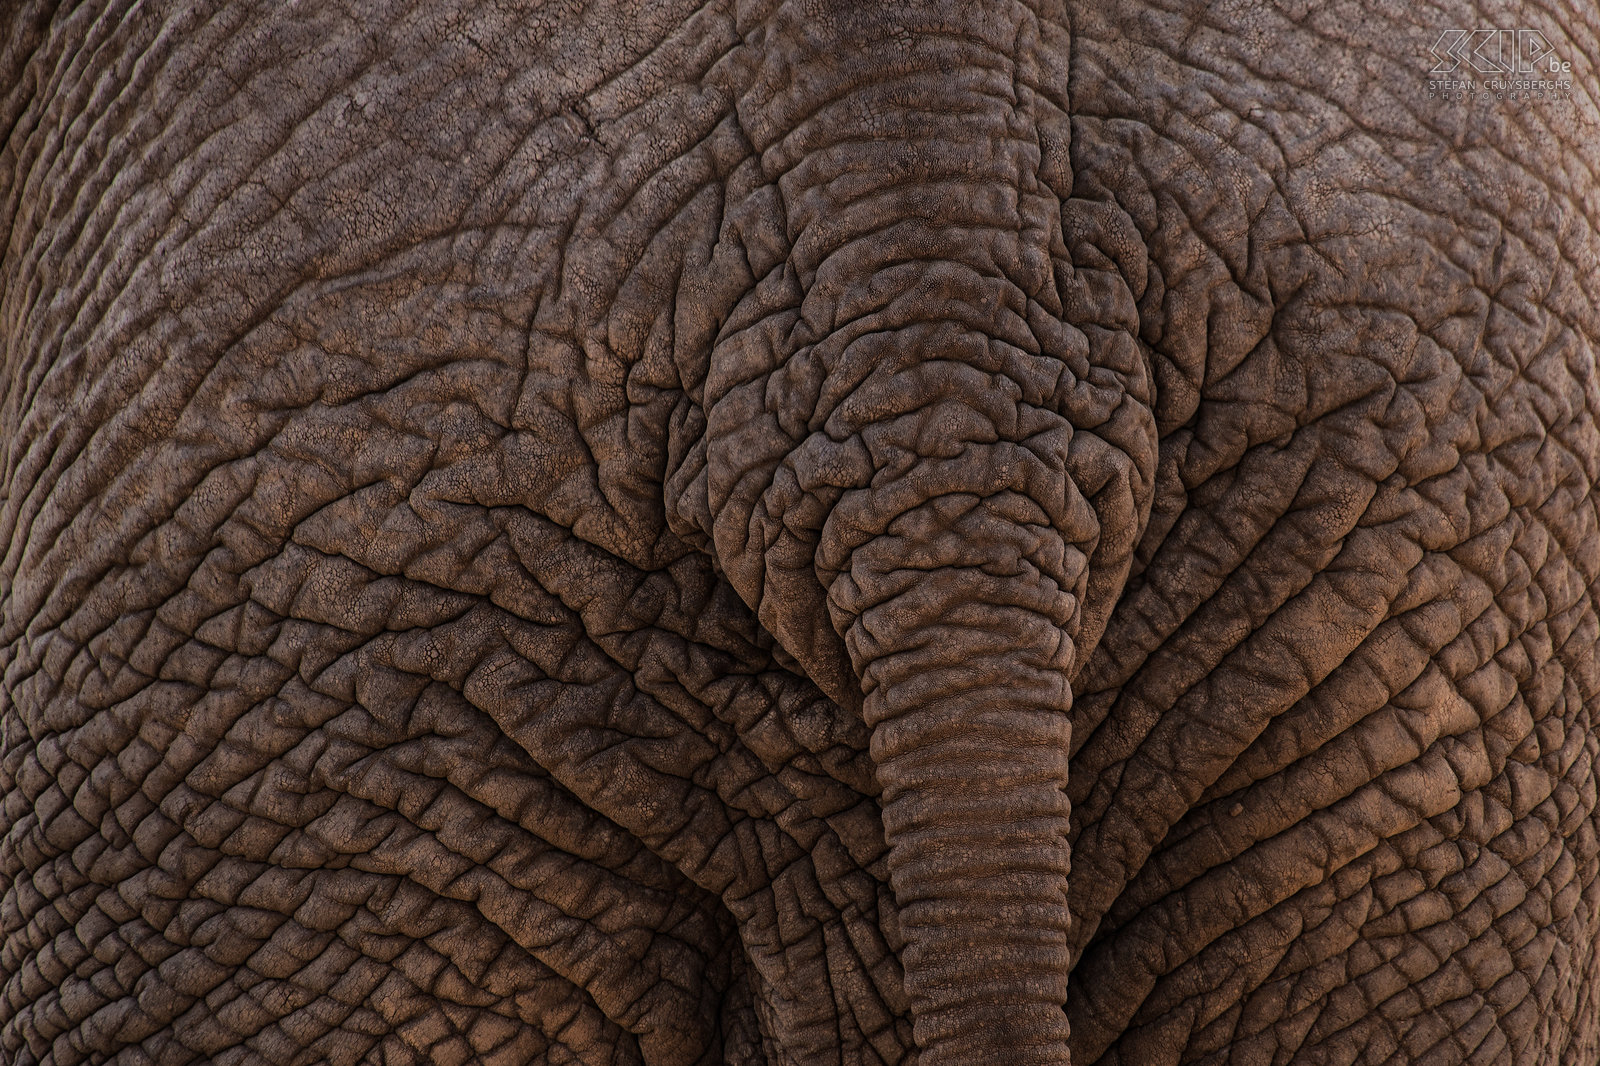 Samburu - Elephant skin Close-up of the elepant skin and tail. Stefan Cruysberghs